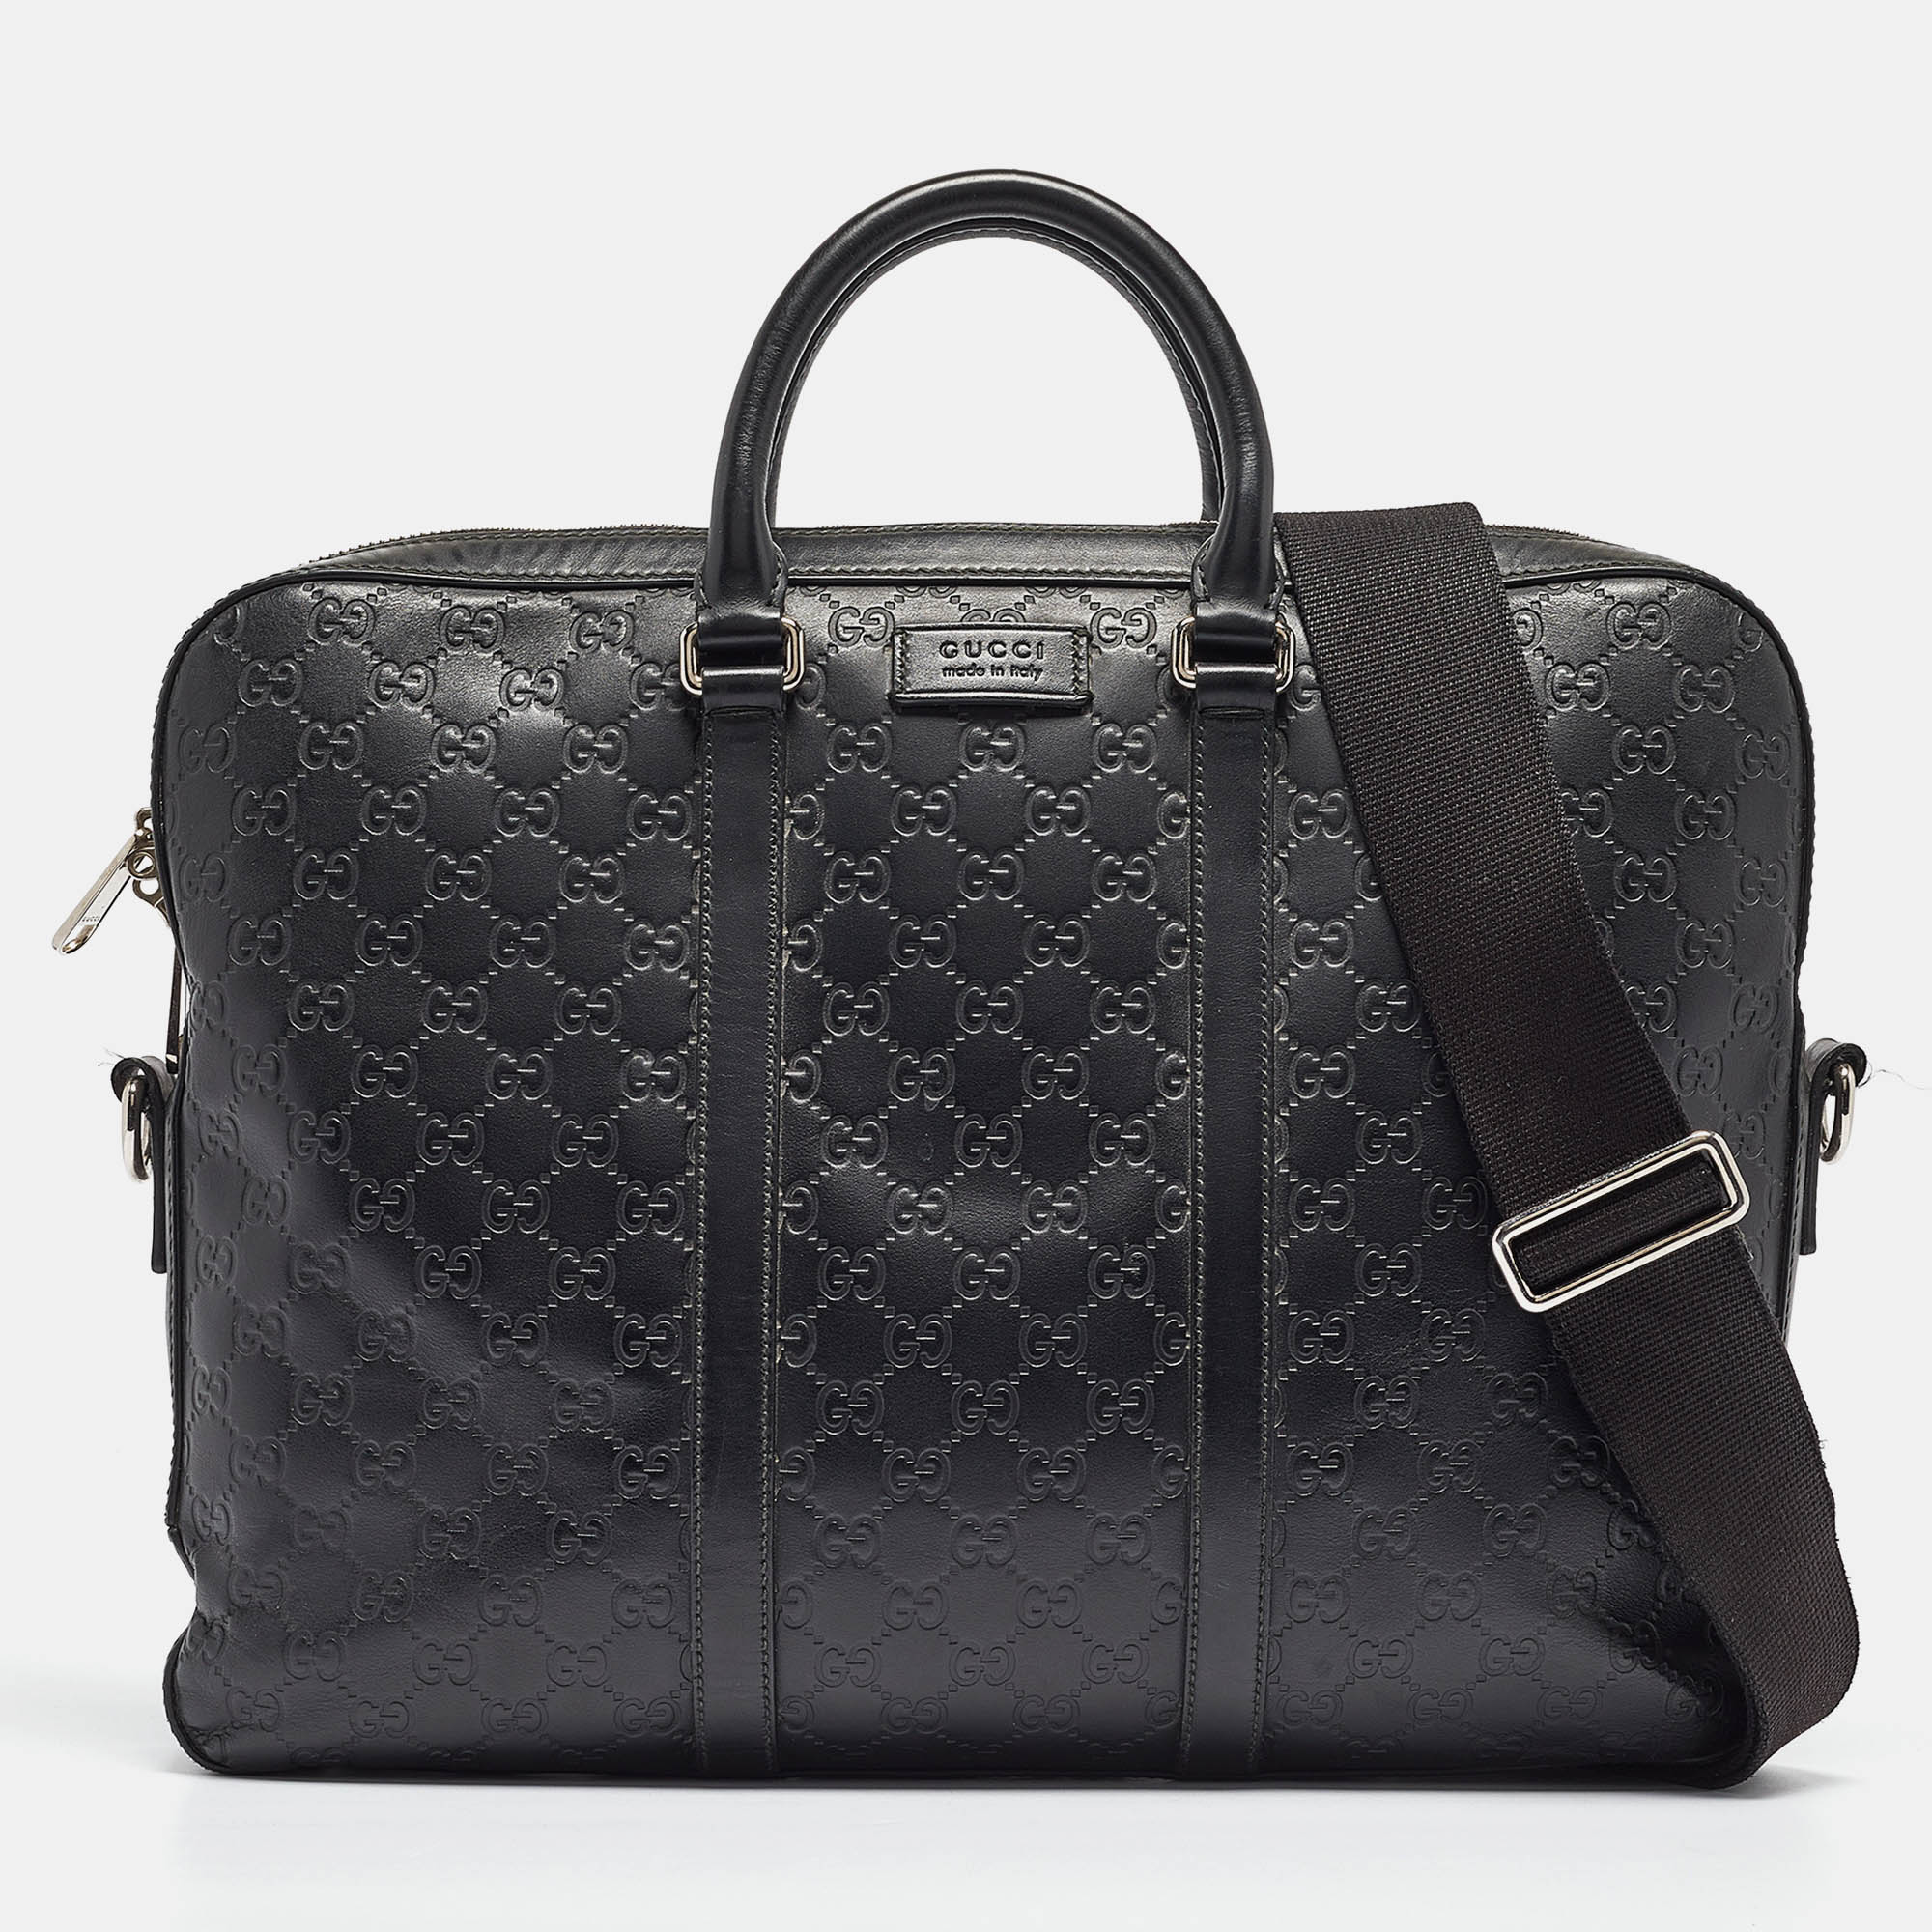 

Gucci Black Guccissima Leather Briefcase